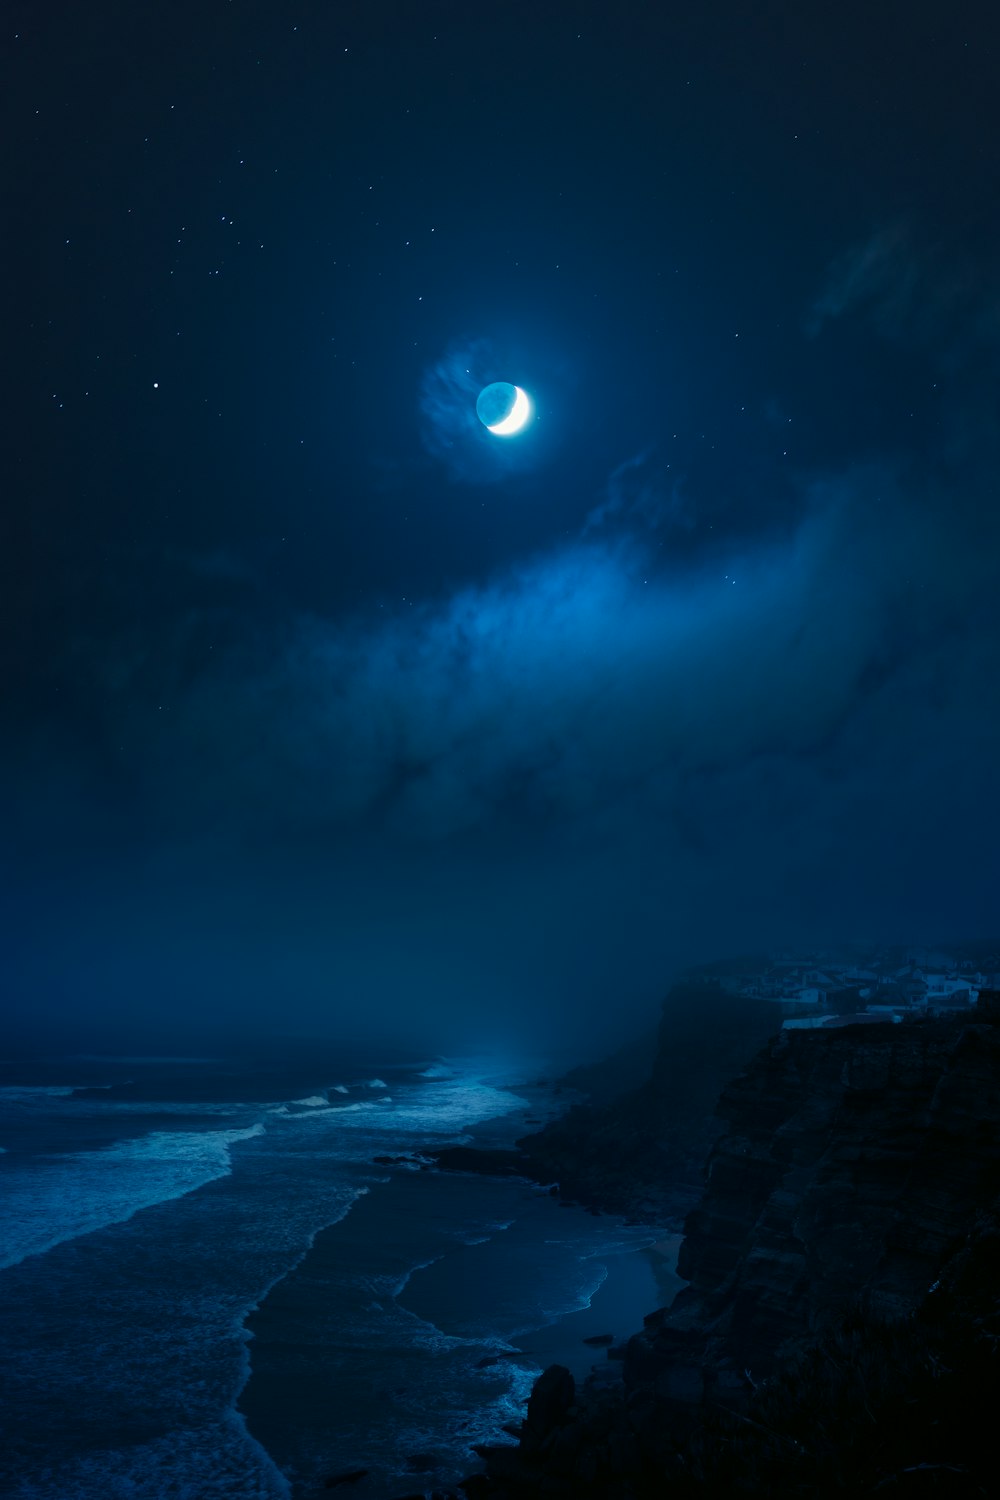 rocky shore under full moon